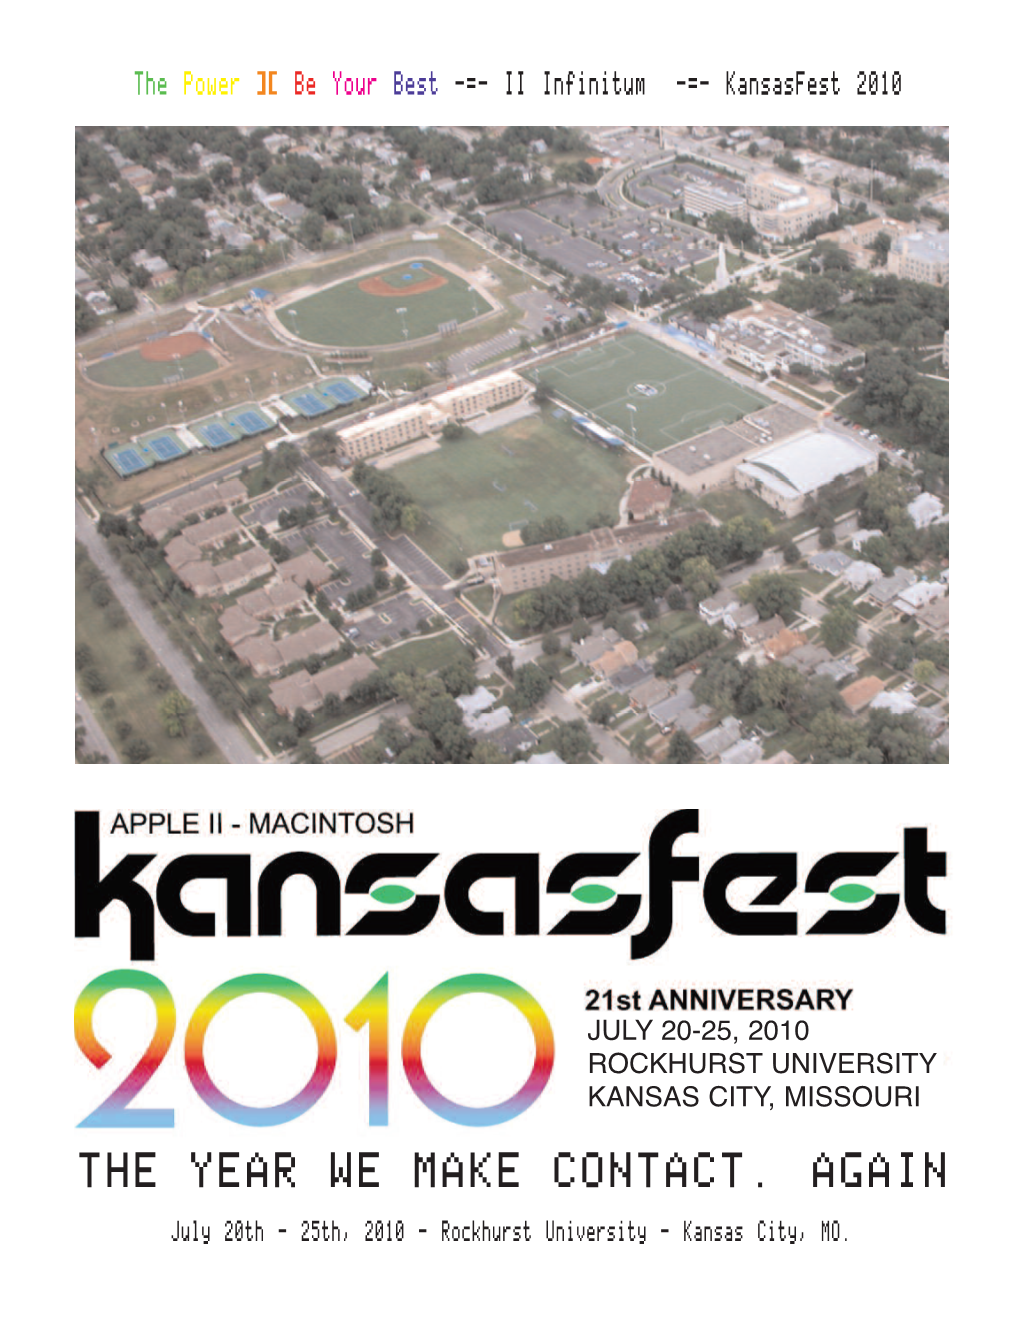 July 20-25, 2010 Rockhurst University Kansas City, Missouri the Year We Make Contact